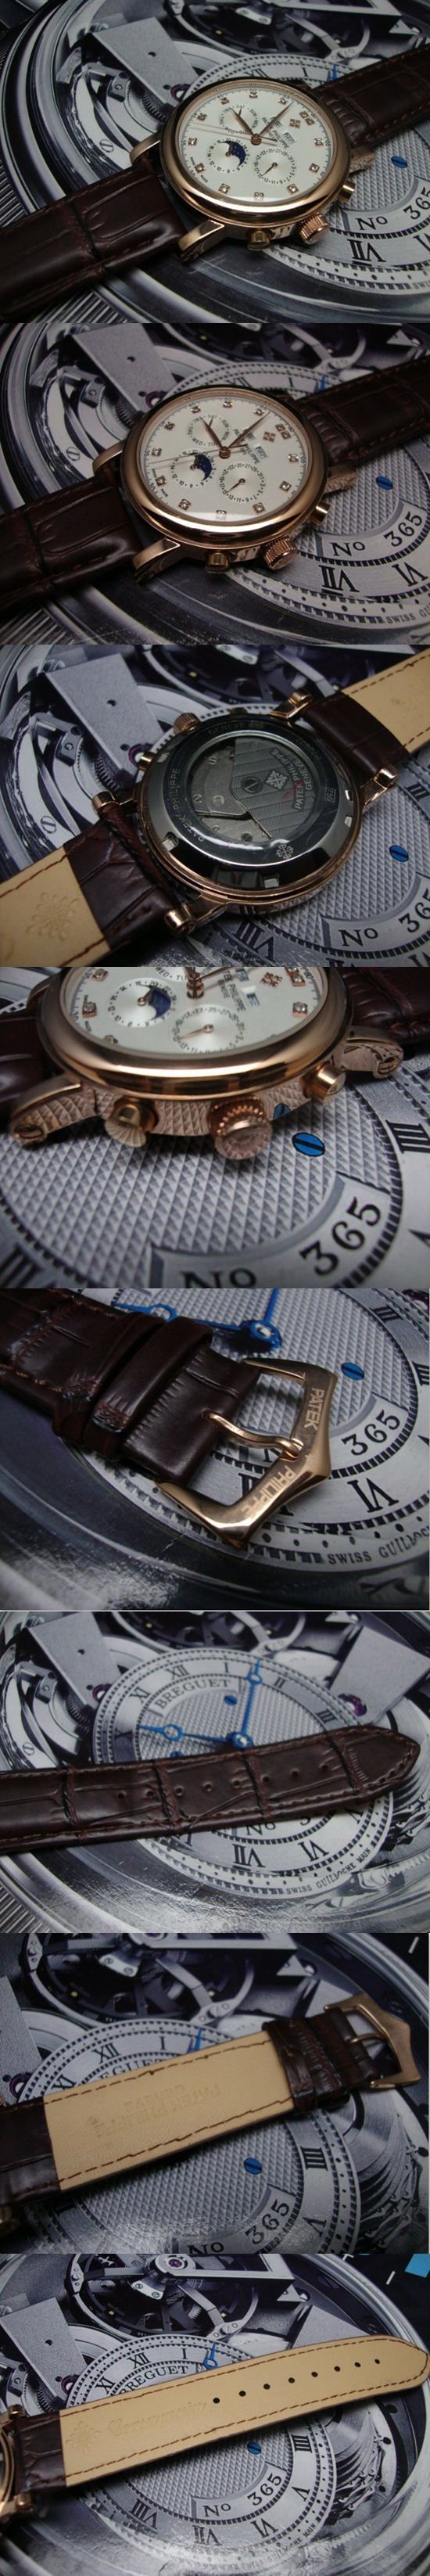 おしゃれなブランド時計がPATEK PHILIPPE-パテック フィリップ腕時計 パテック フィリップ 男/女腕時計 PATEK-PHILIPPE-N-006A を提供します.